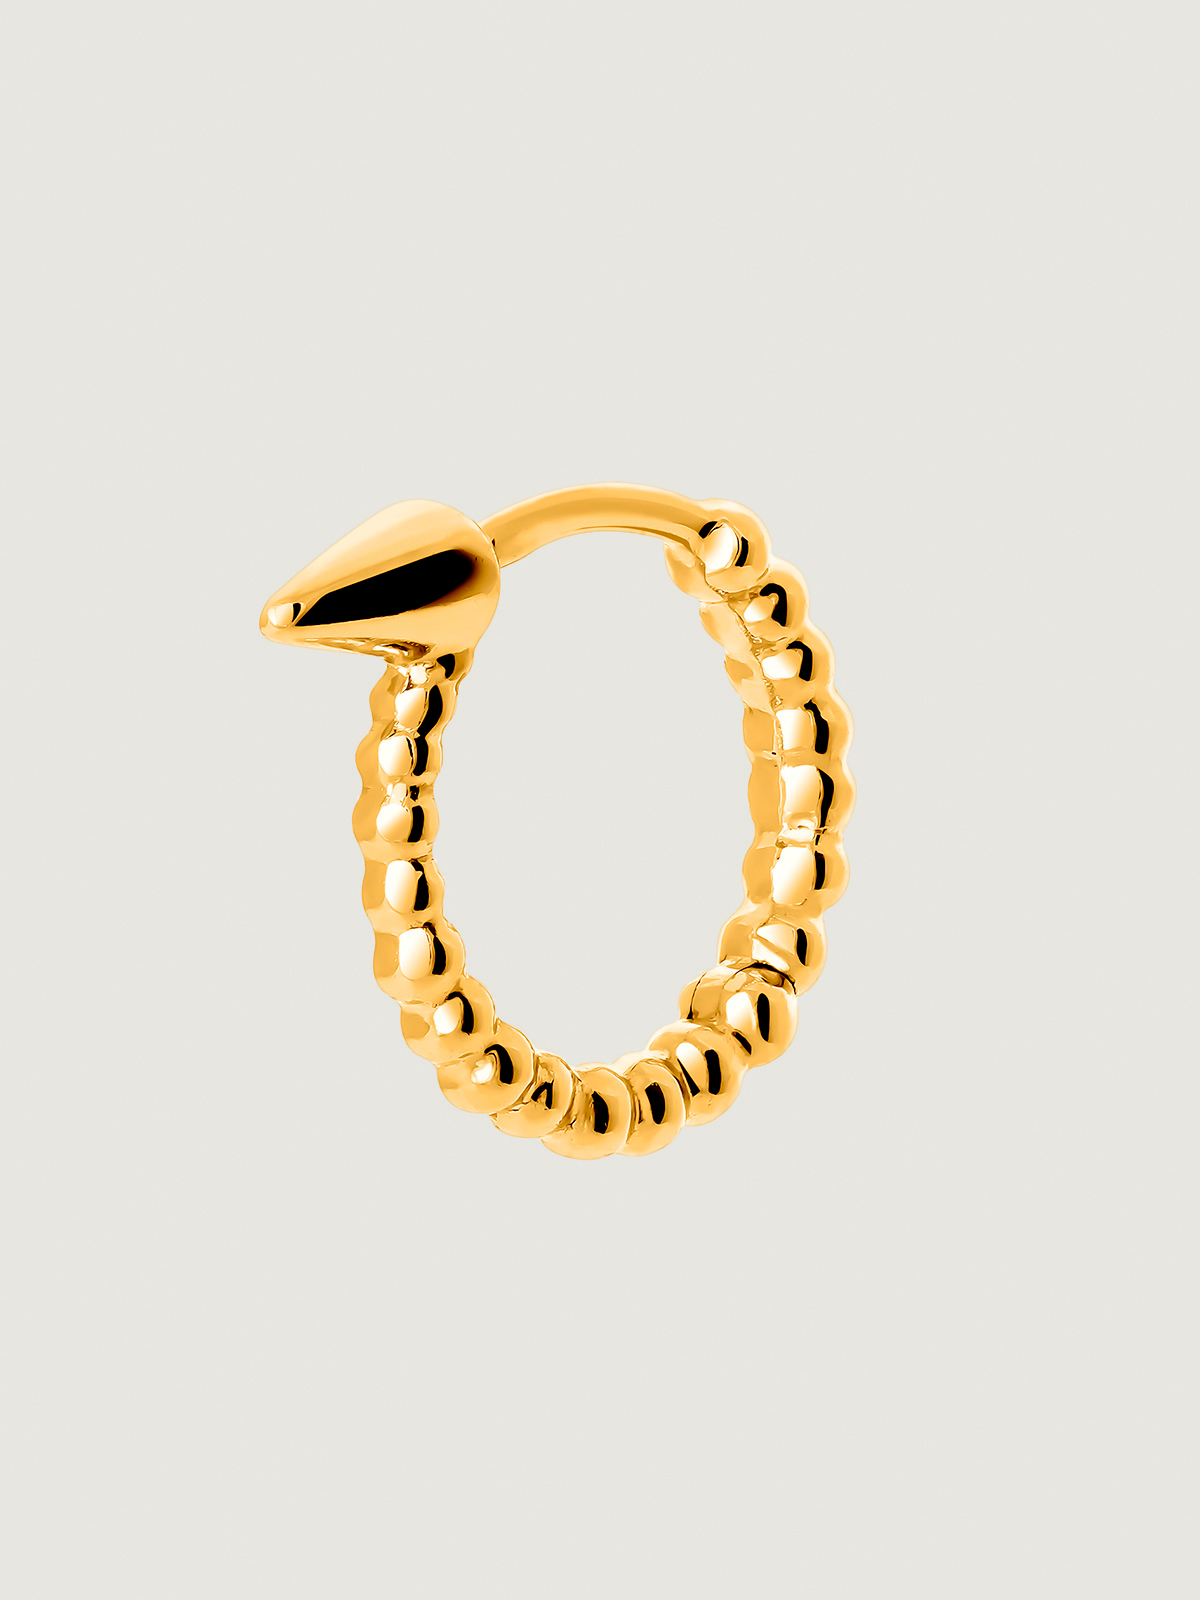 Boucle d'oreille individuelle en or jaune 9K de petite taille avec des sphères et une pointe.